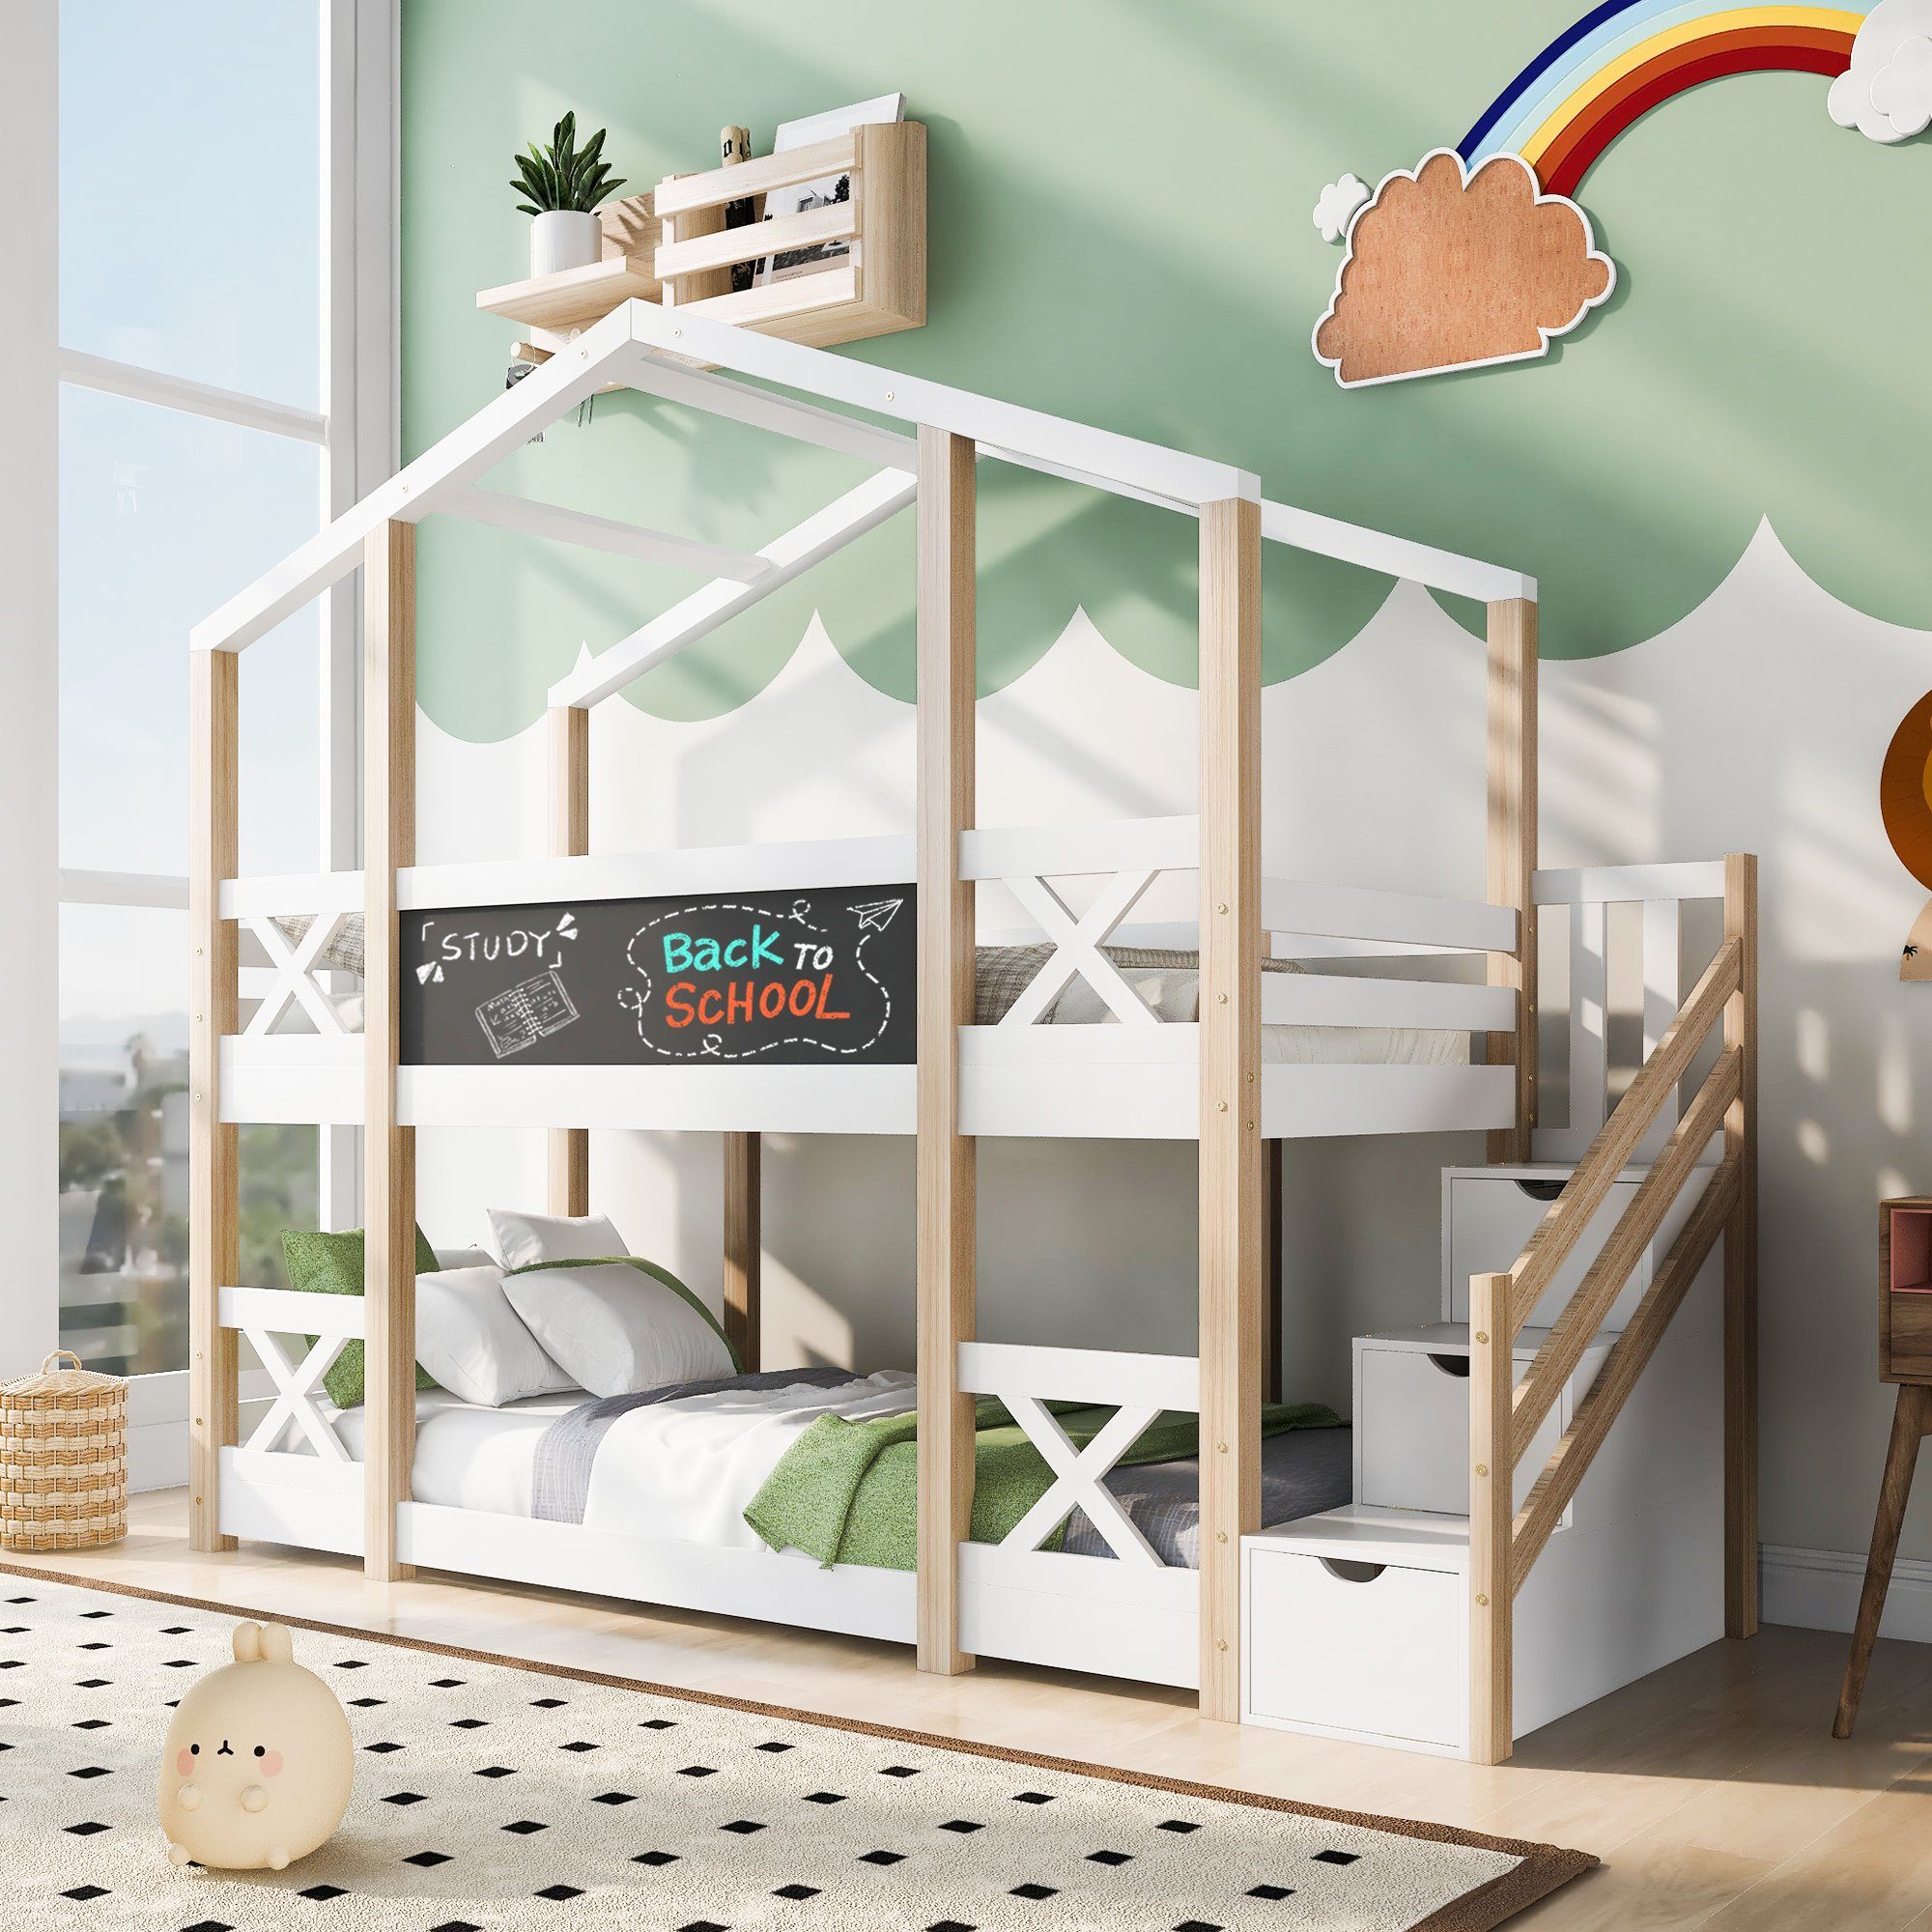 Ulife Etagenbett Hochbett Kinderbett mit Treppe /Leiter 3 Schubladen Kiefer 90x200cm, für 2 Kinder